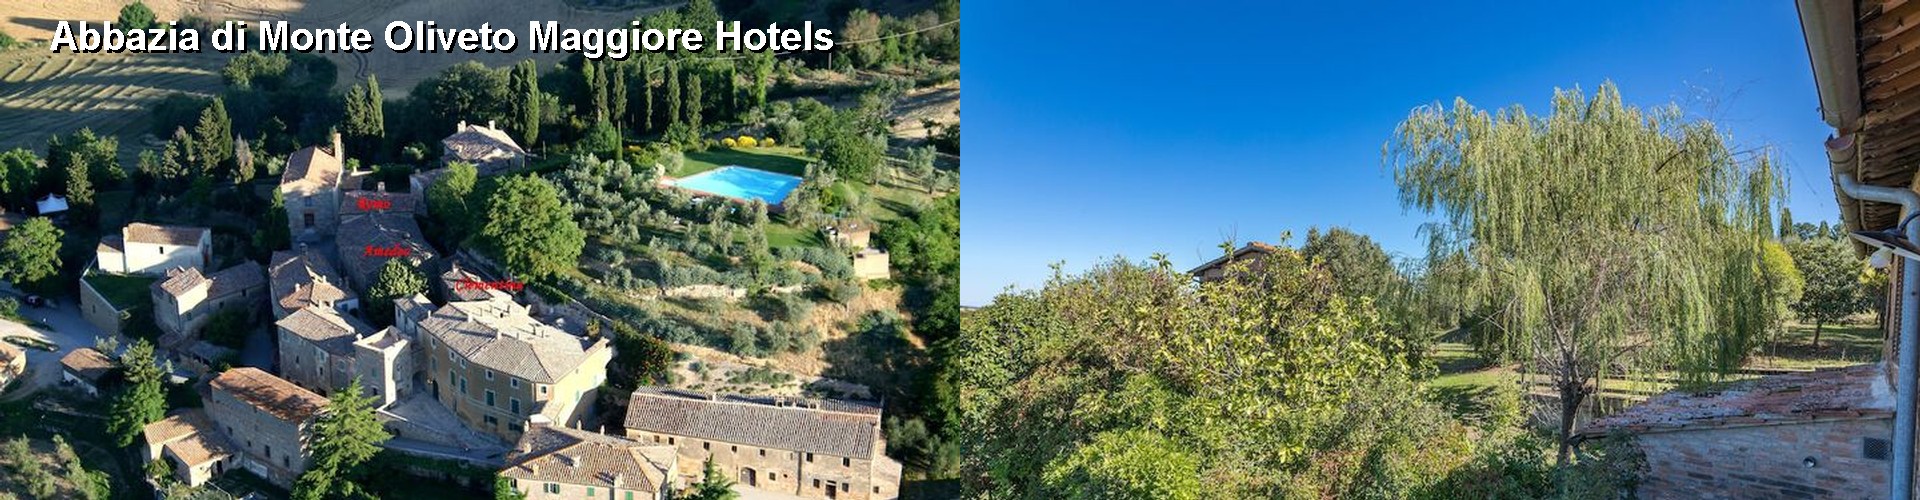 5 Best Hotels near Abbazia di Monte Oliveto Maggiore